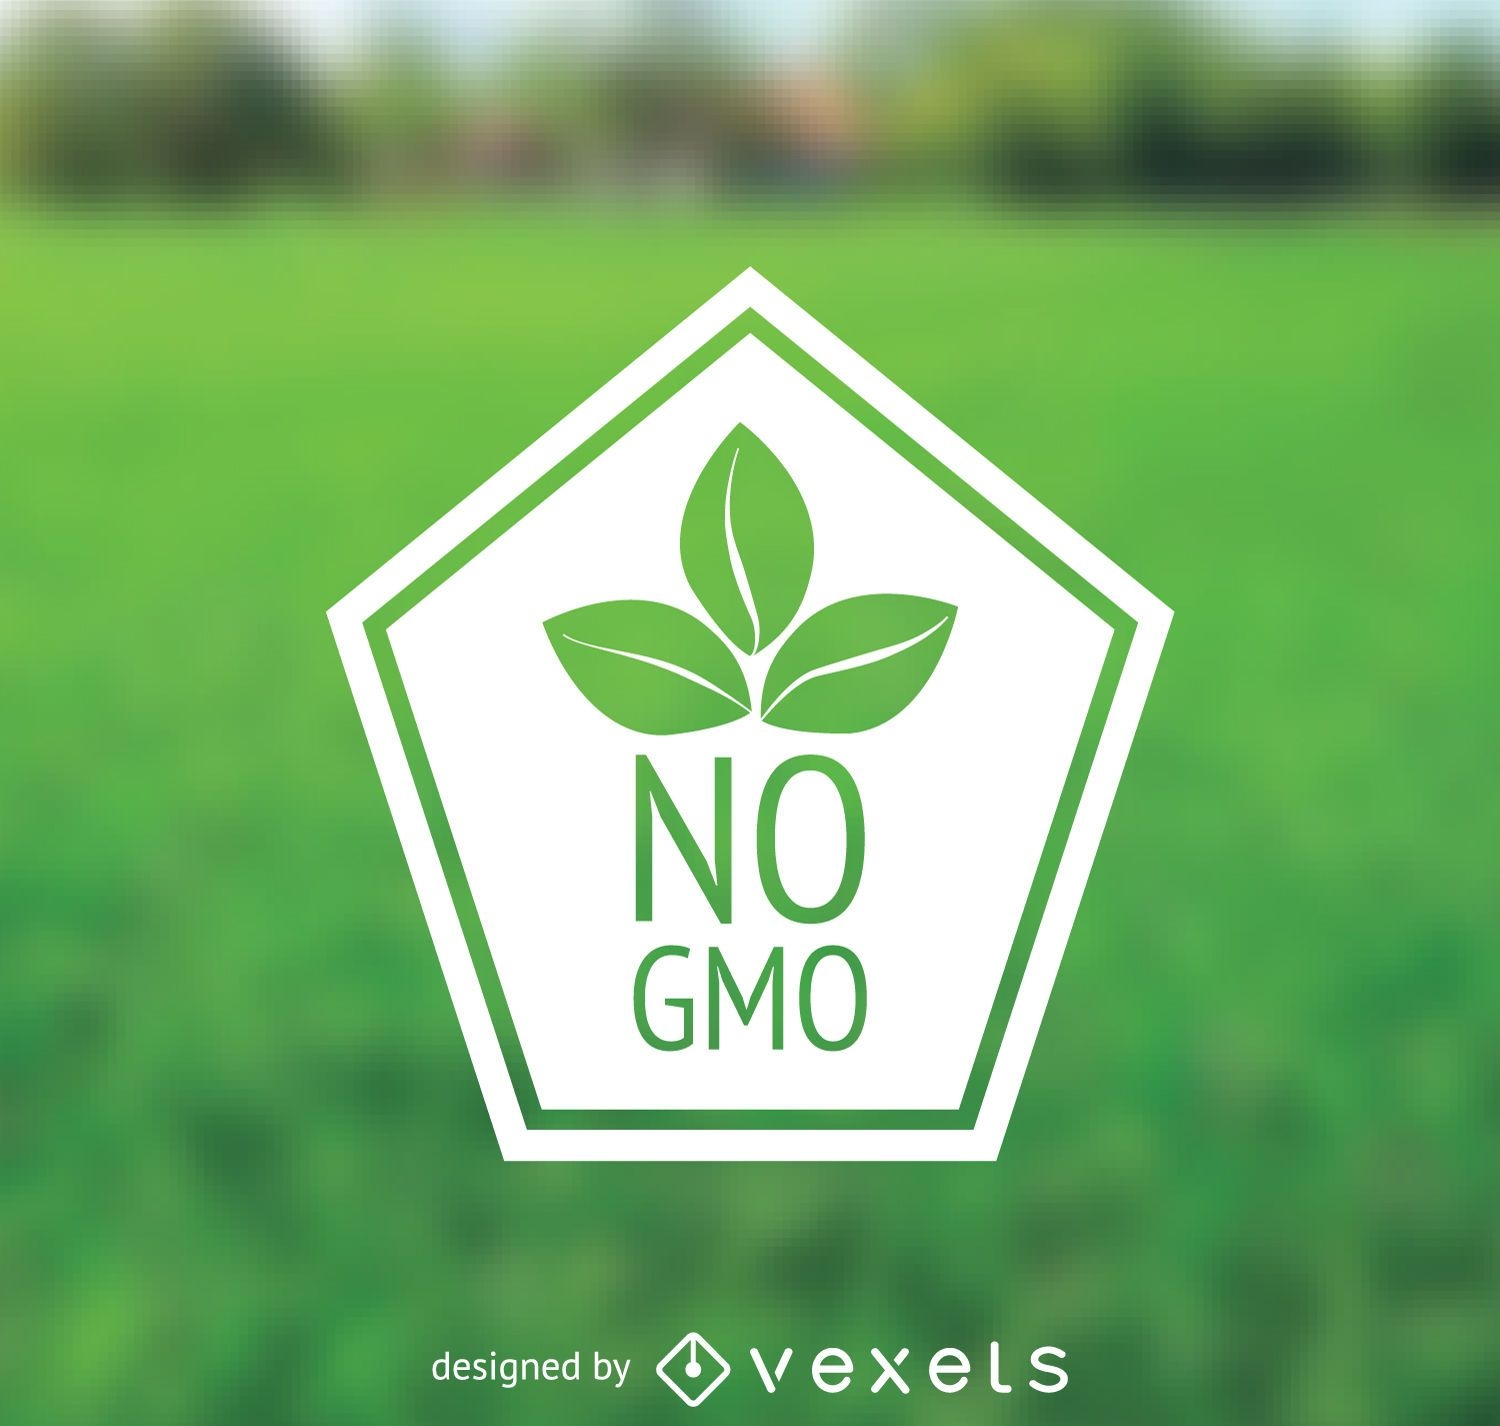 No GMO badge 